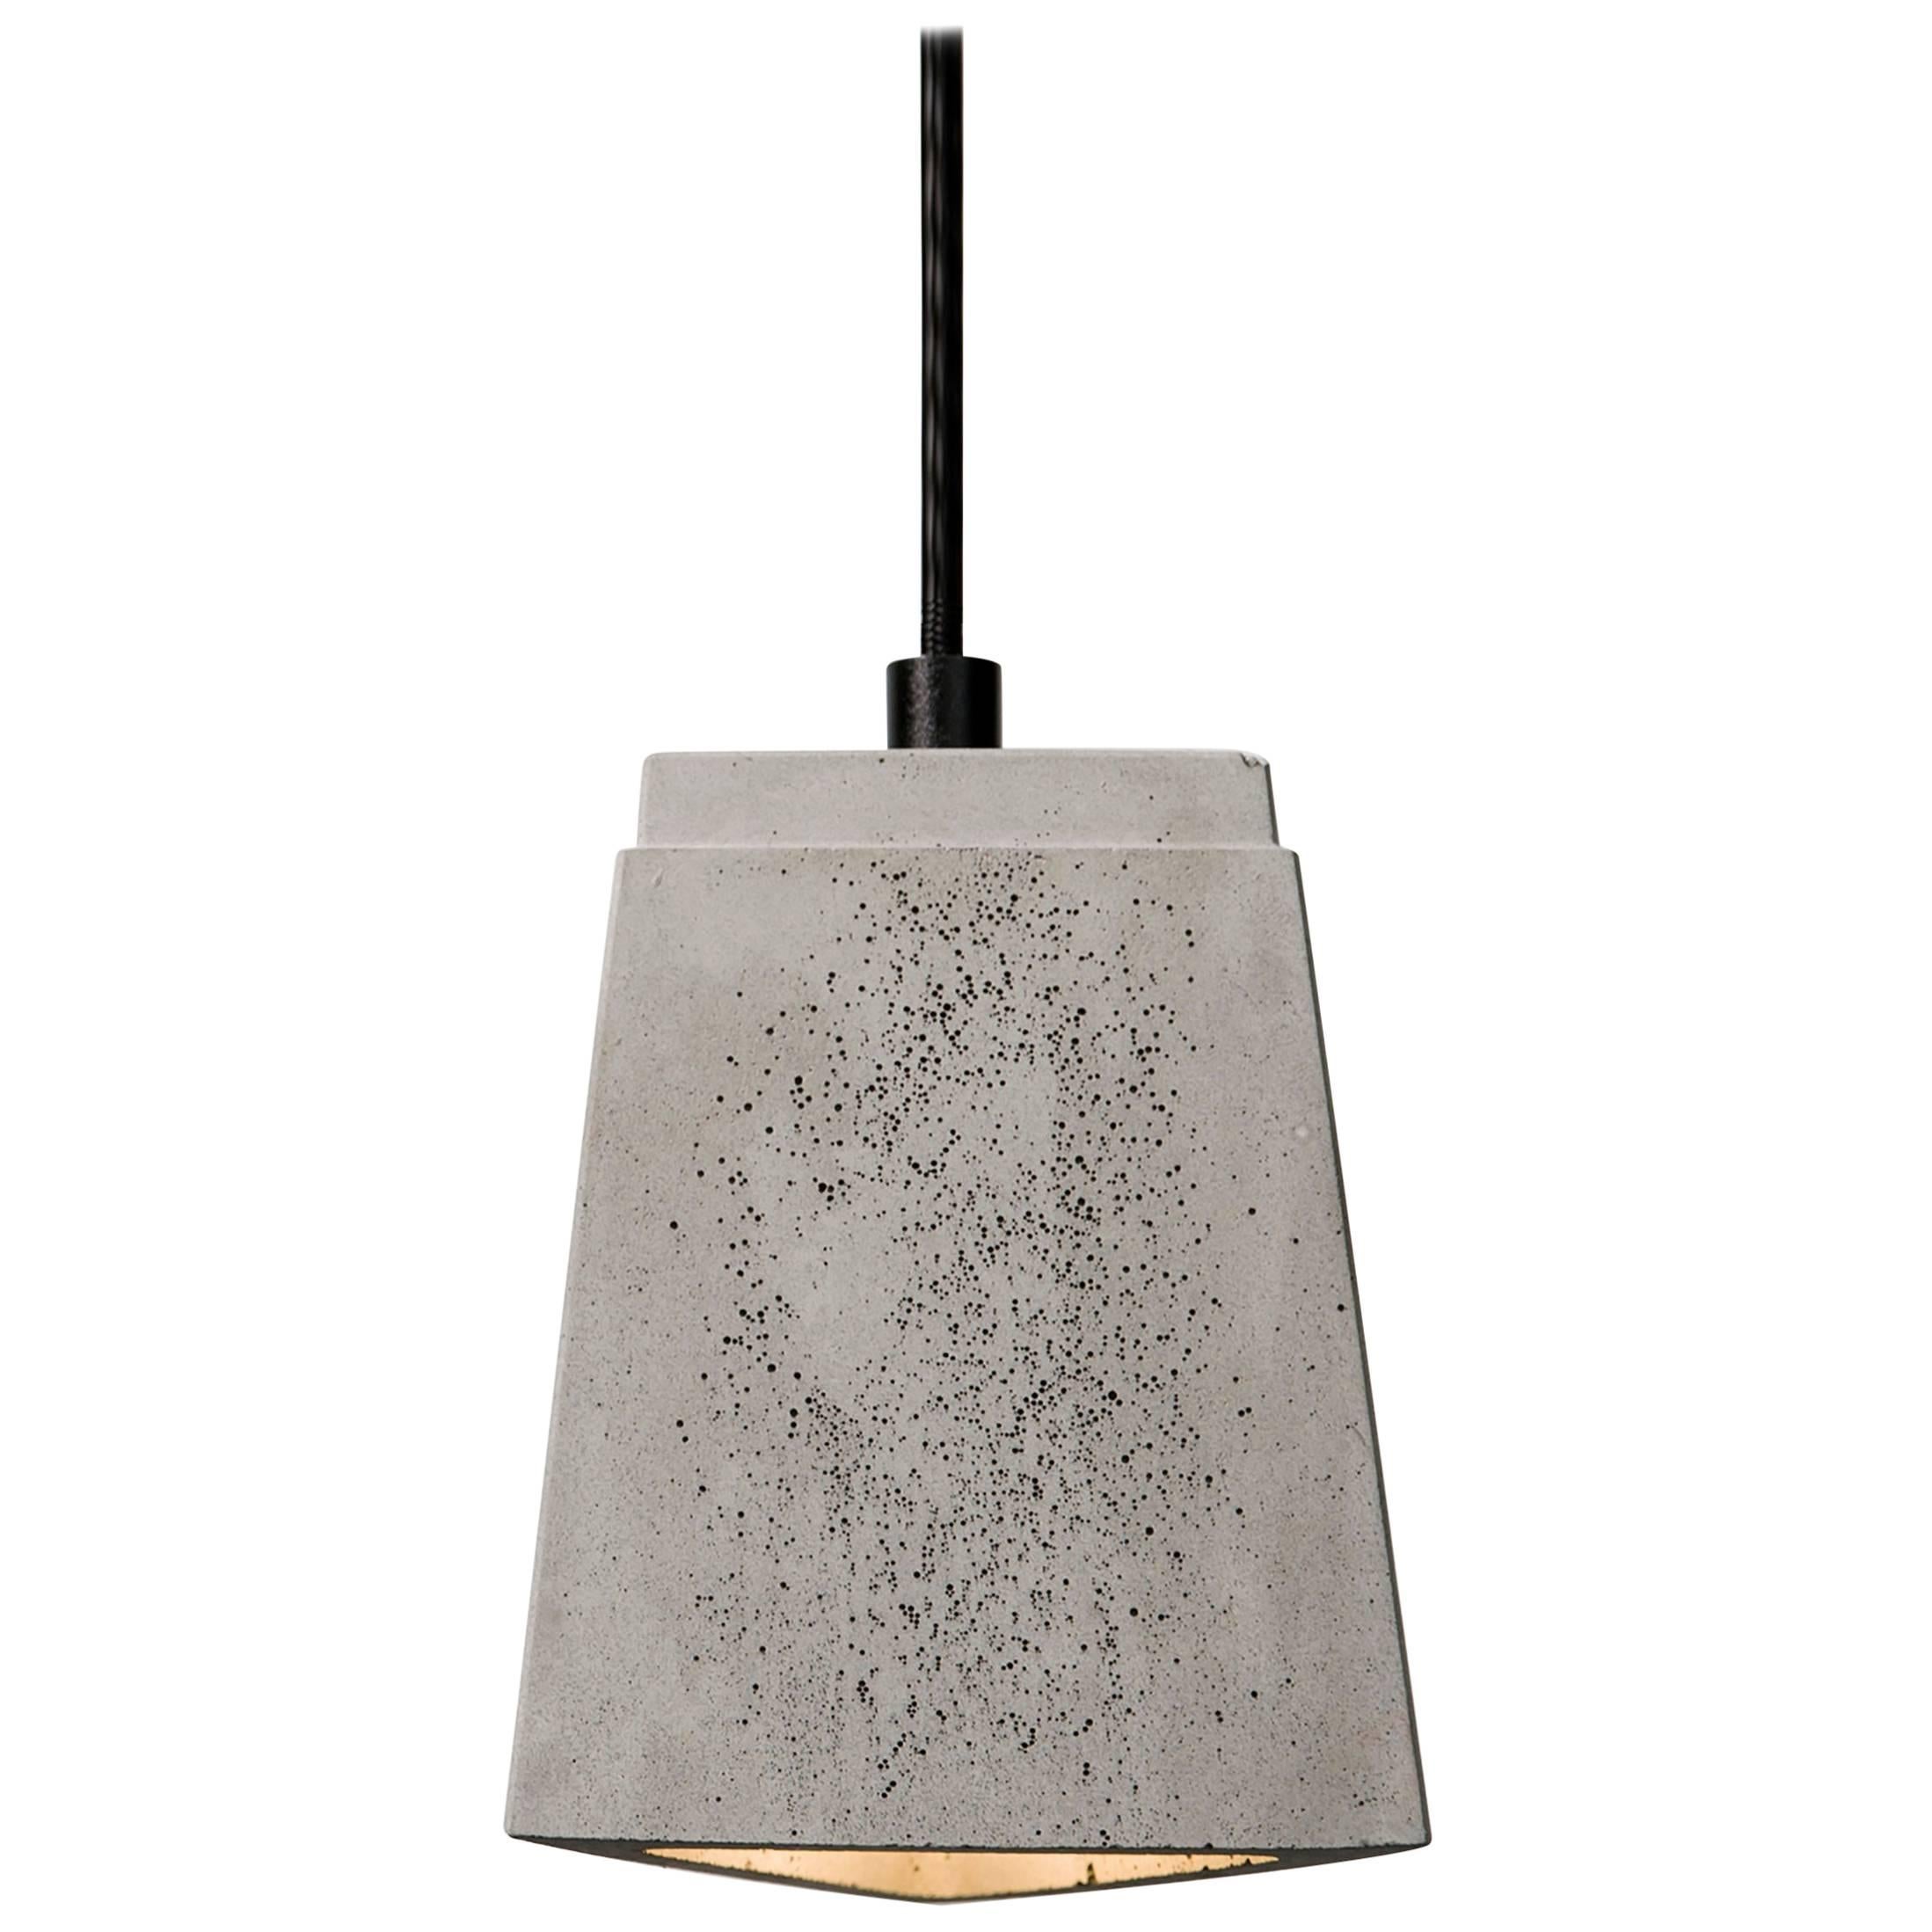 Three, Concrete Ceiling Lamp by Bentu Design